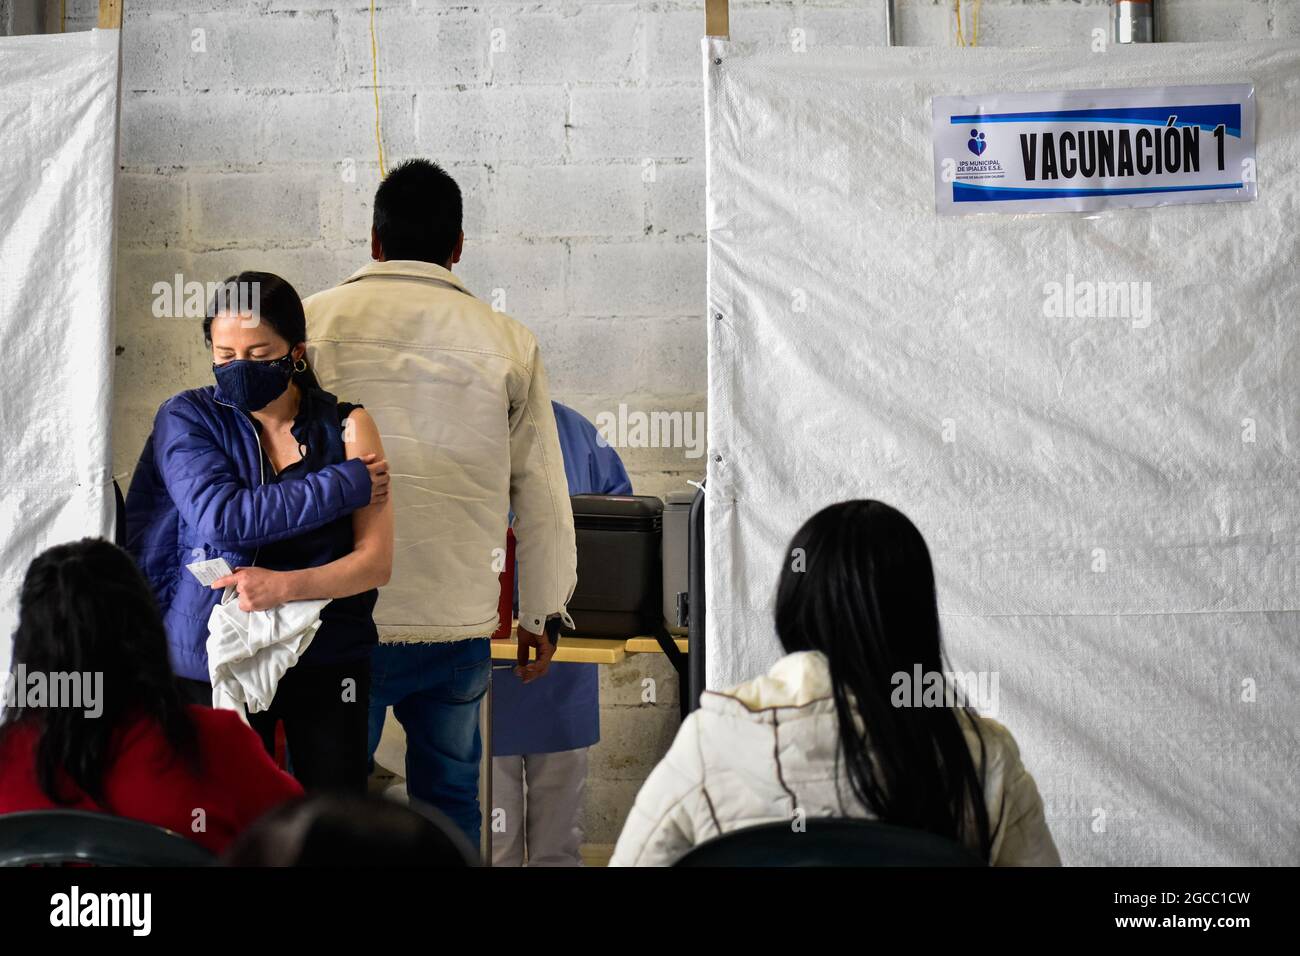 Eine Frau hält ihre Hand gegen ihren Arm, nachdem sie eine Dosis des Impfstoffs Moderna COVID-19 erhalten hat, als Menschen im Alter von 25 bis 30 Jahren am 2. August 2021 in Ipiales - Nariño, Kolumbien, ihre Impfphase mit dem neuartigen Impfstoff Moderna COVID-19 gegen die Coronavirus-Krankheit beginnen. Stockfoto